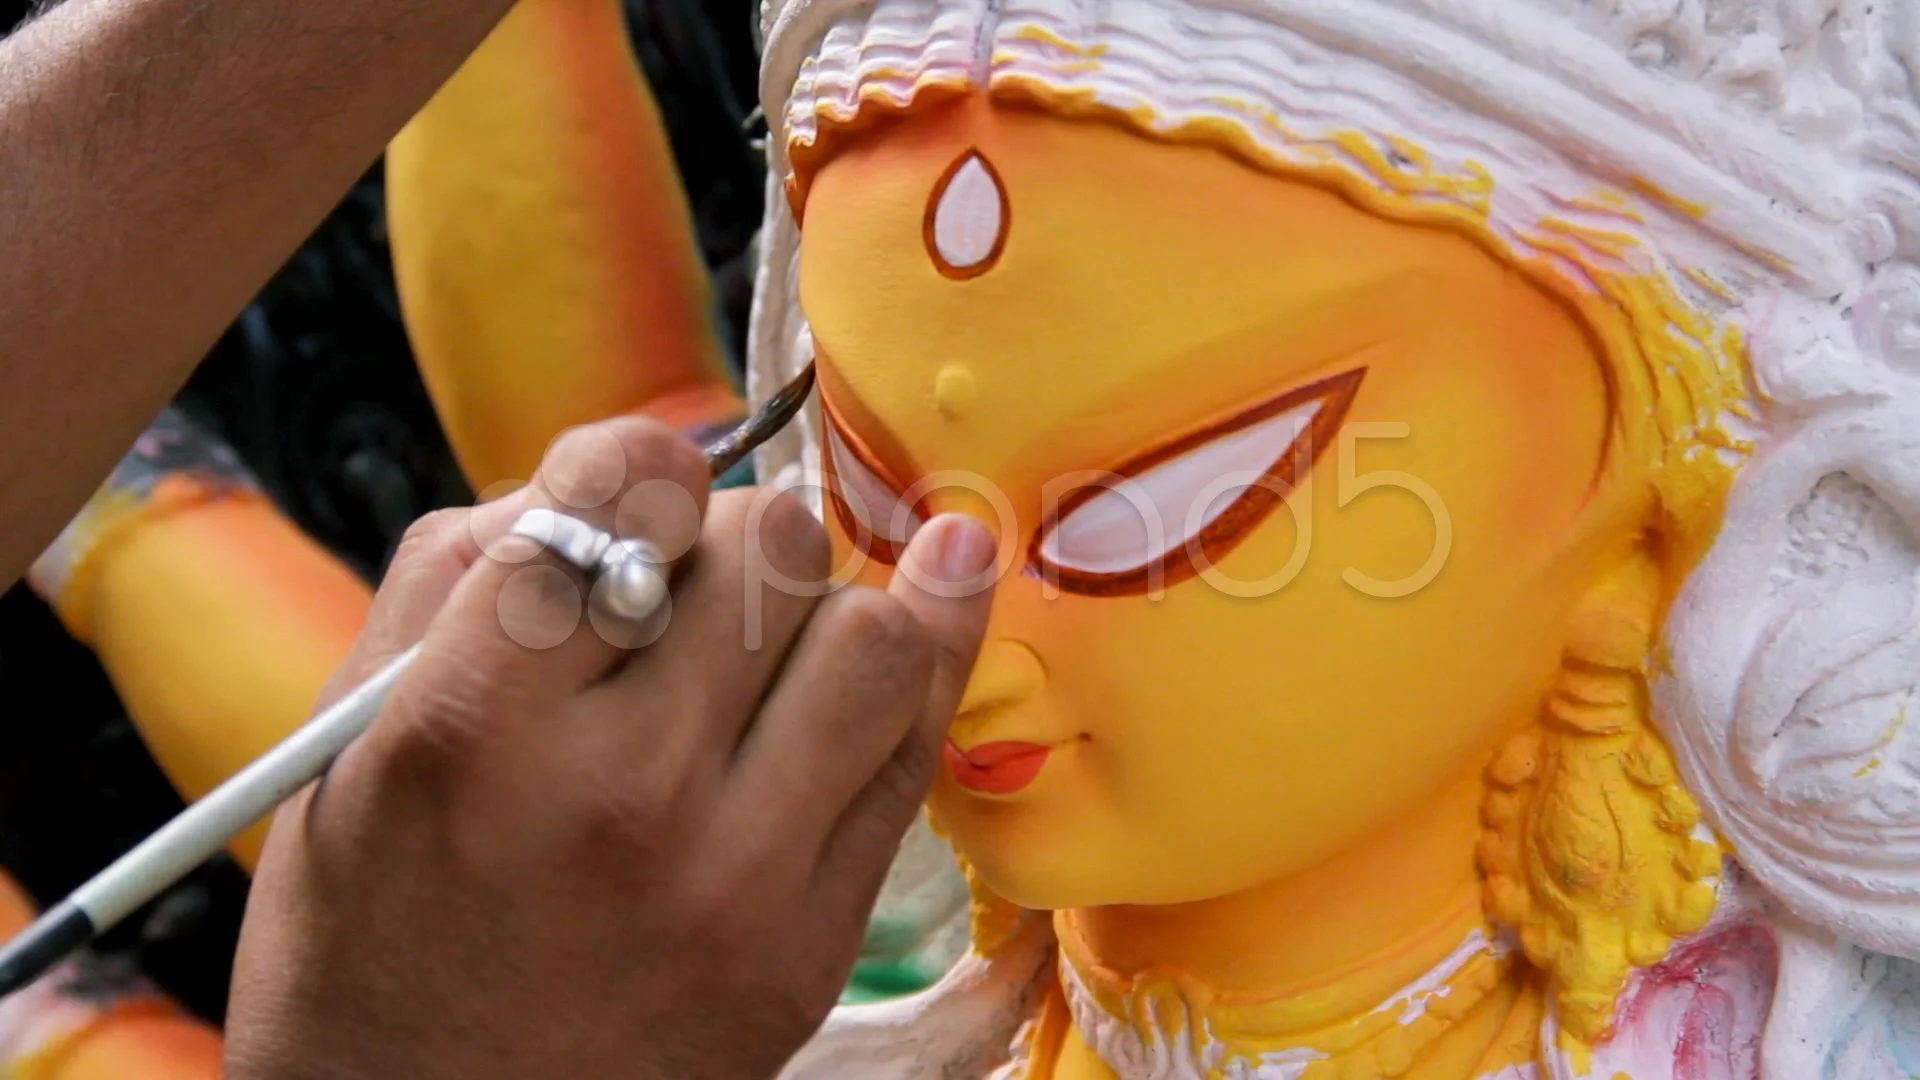 Can I keep a Durga idol in my pooja room? - Quora